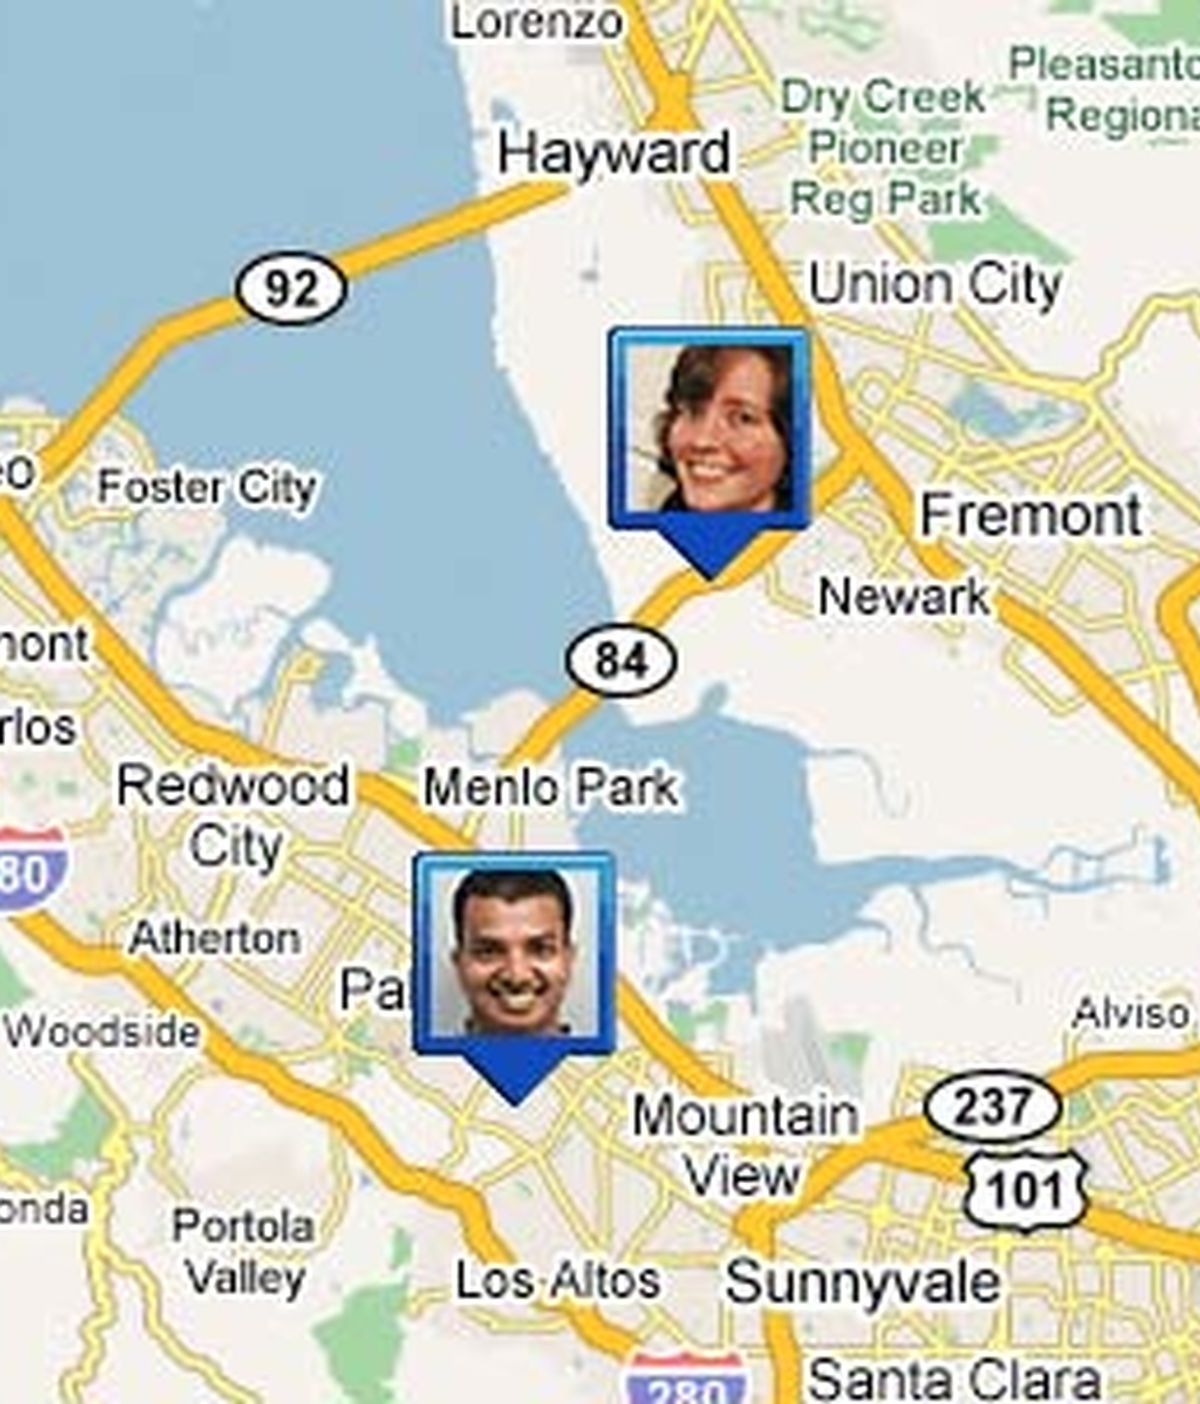 La aplicación permite conocer la ubicación exacta de tus amigos. Foto: Google Latitude.